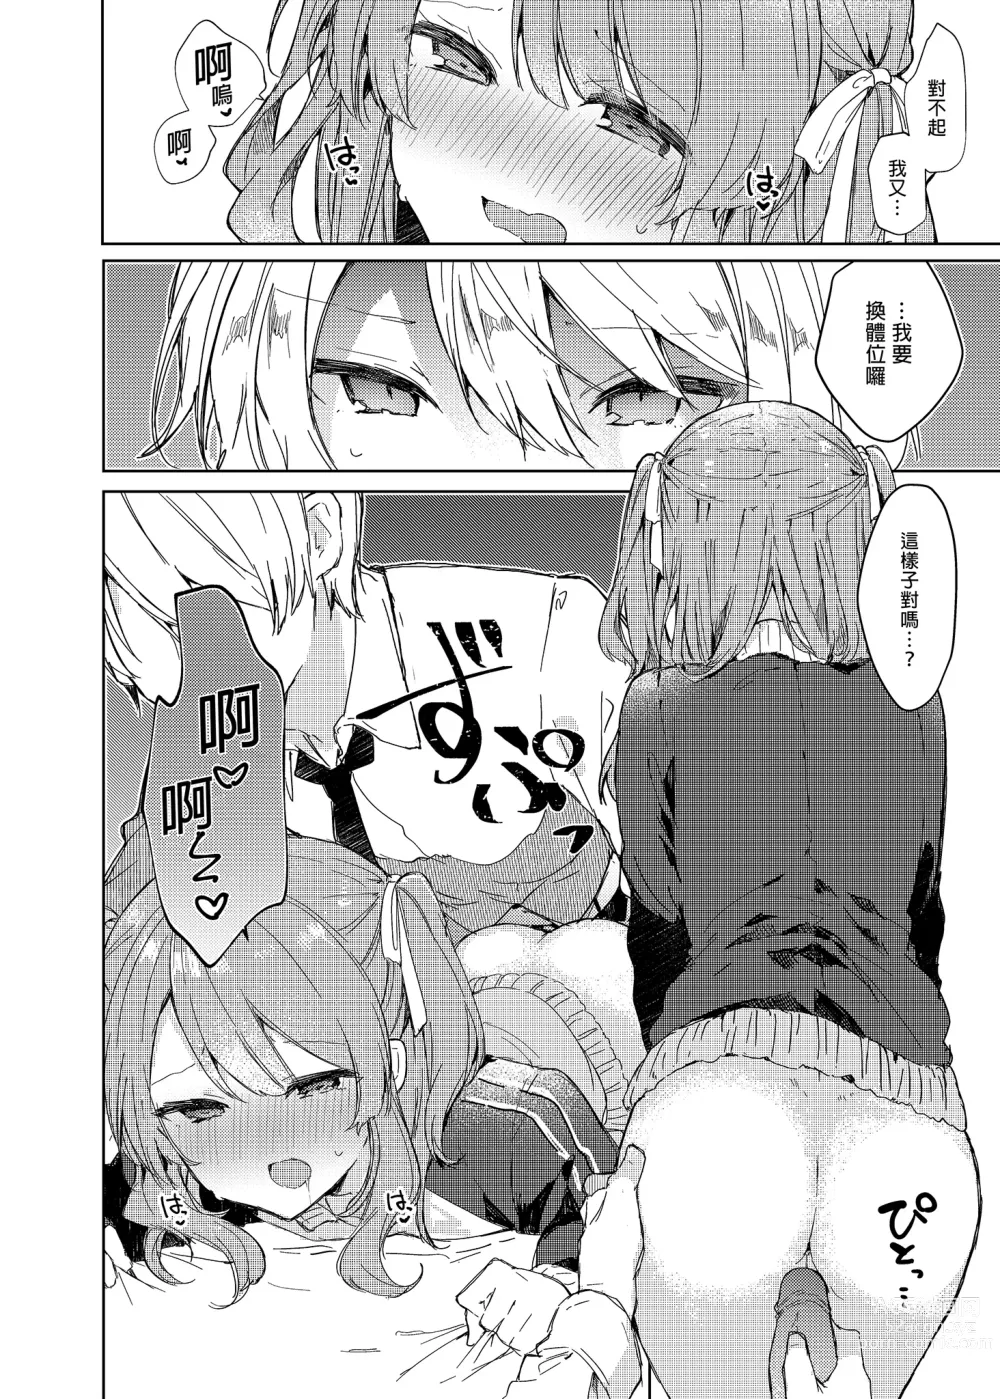 Page 40 of doujinshi 今天開始當個壞孩子。 (decensored)